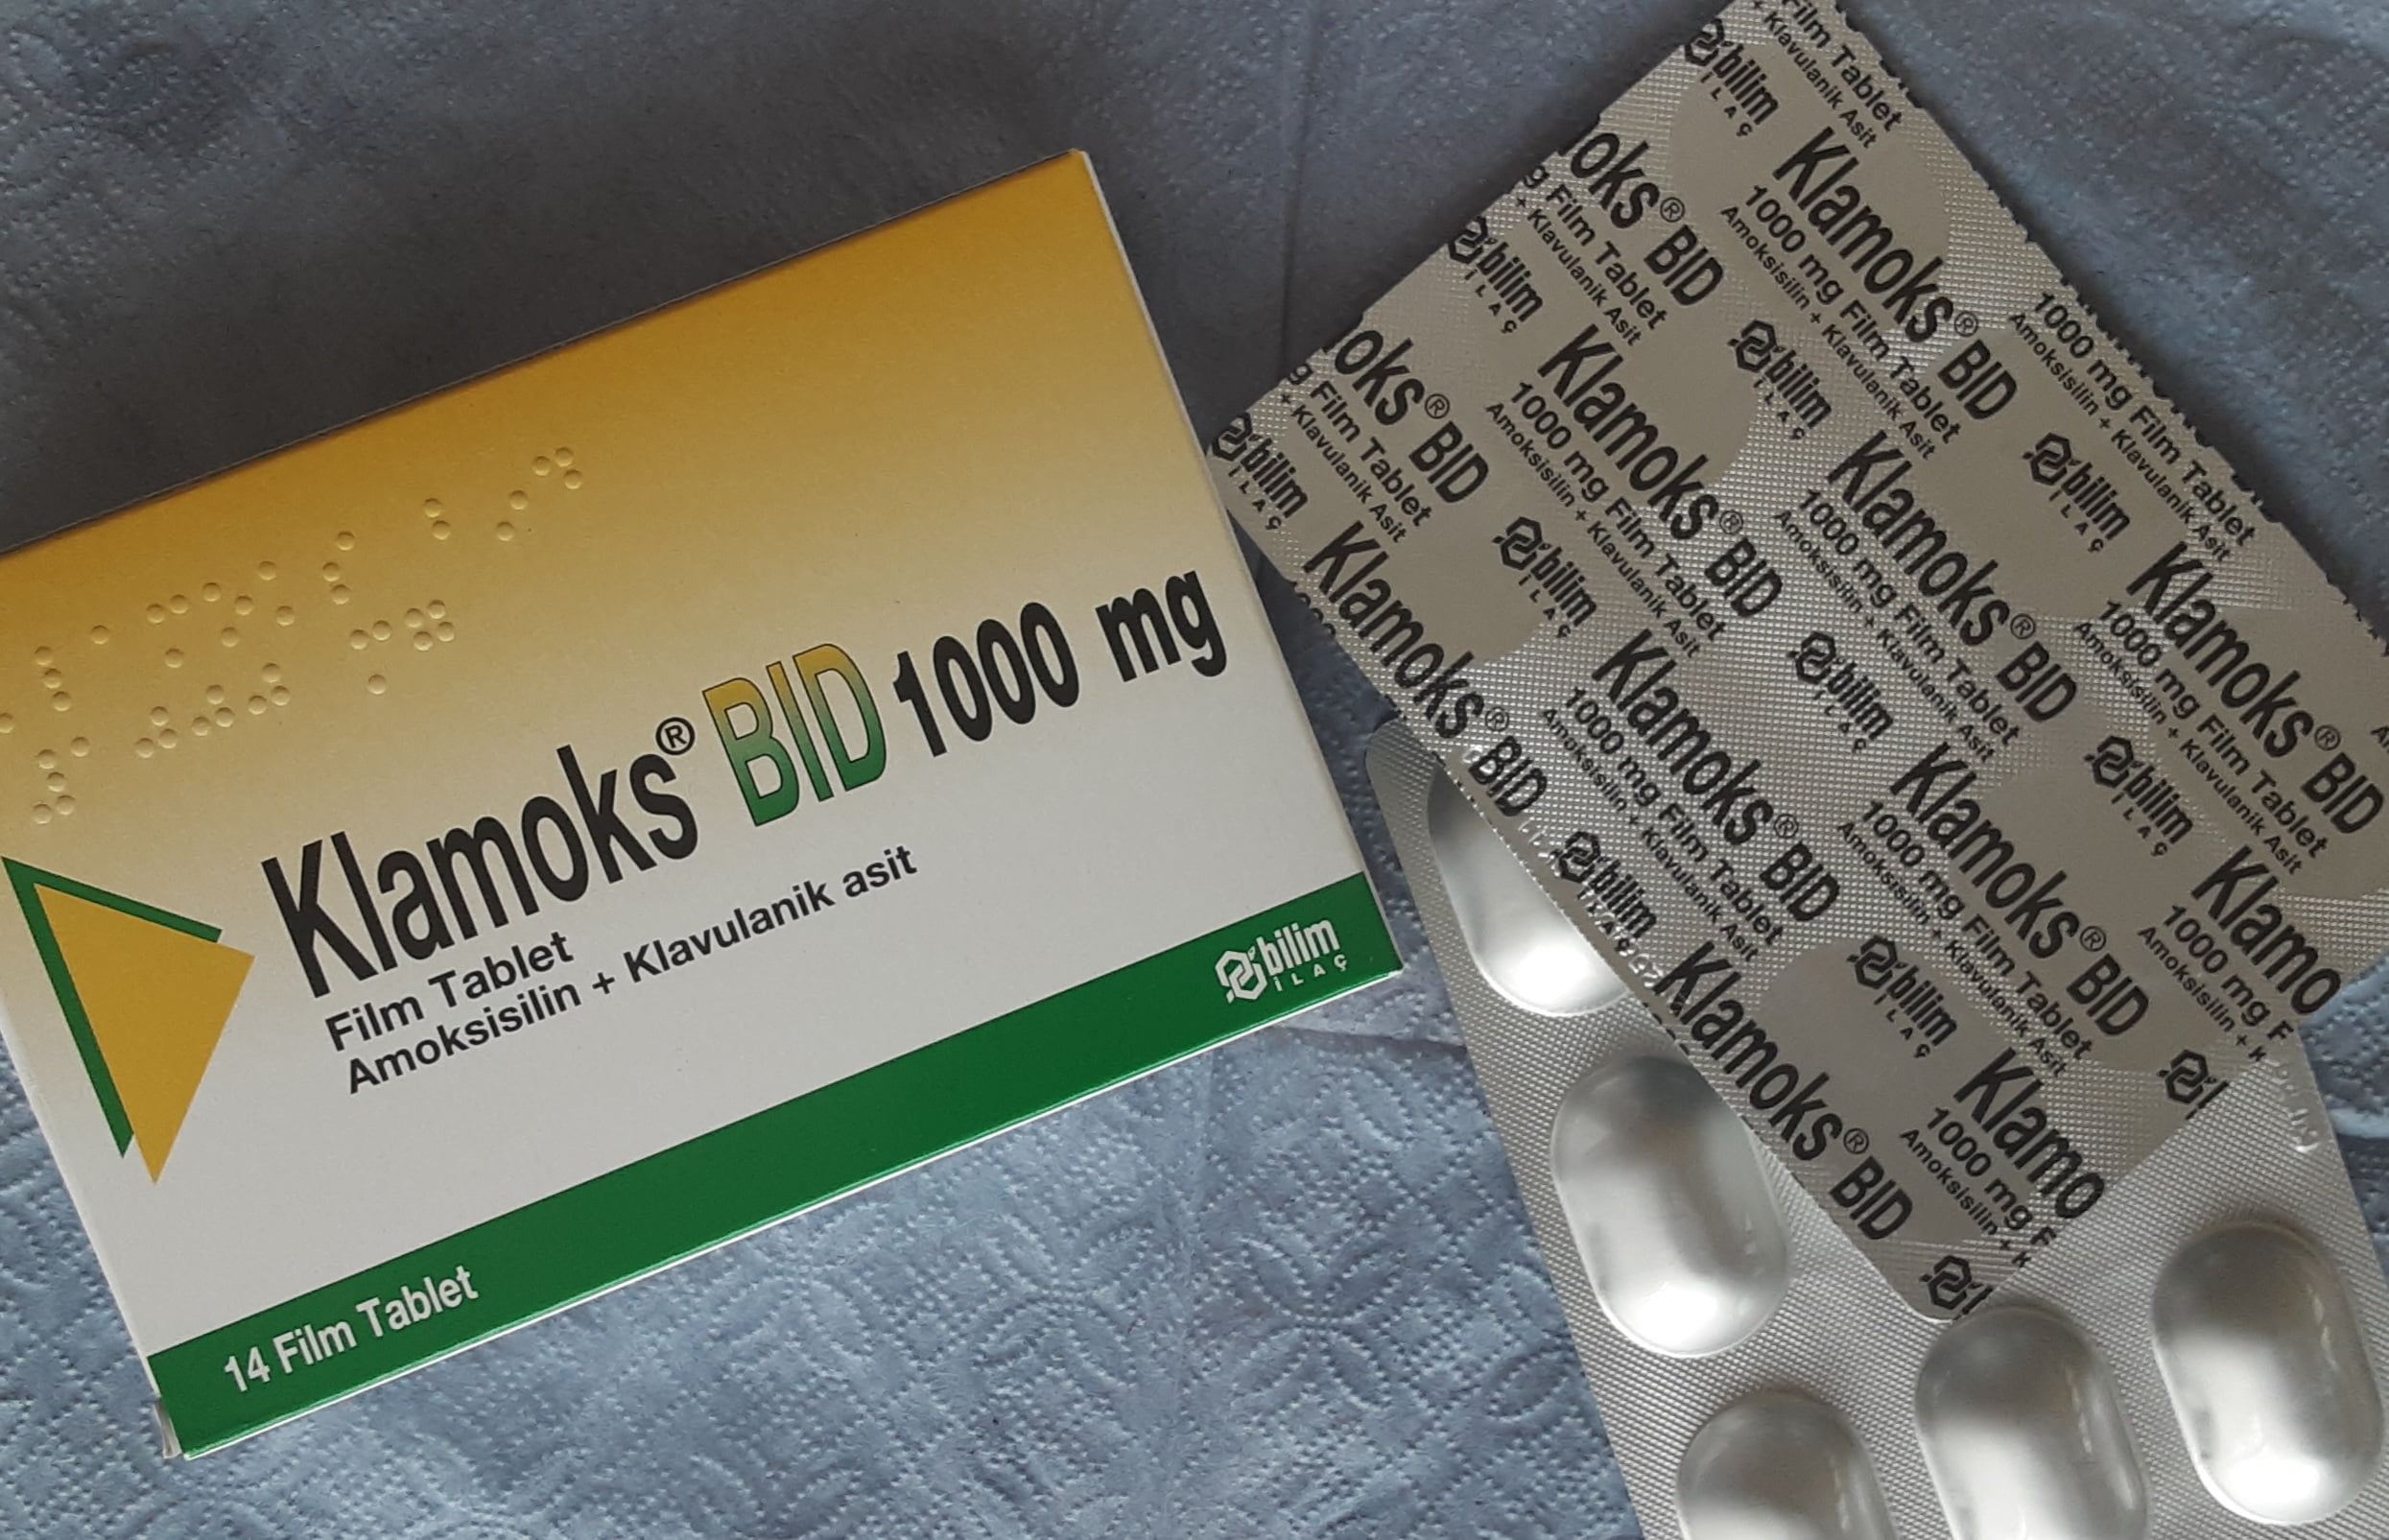 Klamoks Bid 1000 mg Ne İşe Yarar | Klamoks Antibiyotik Ne İçin Kullanılır, Nasıl Kullanılır?